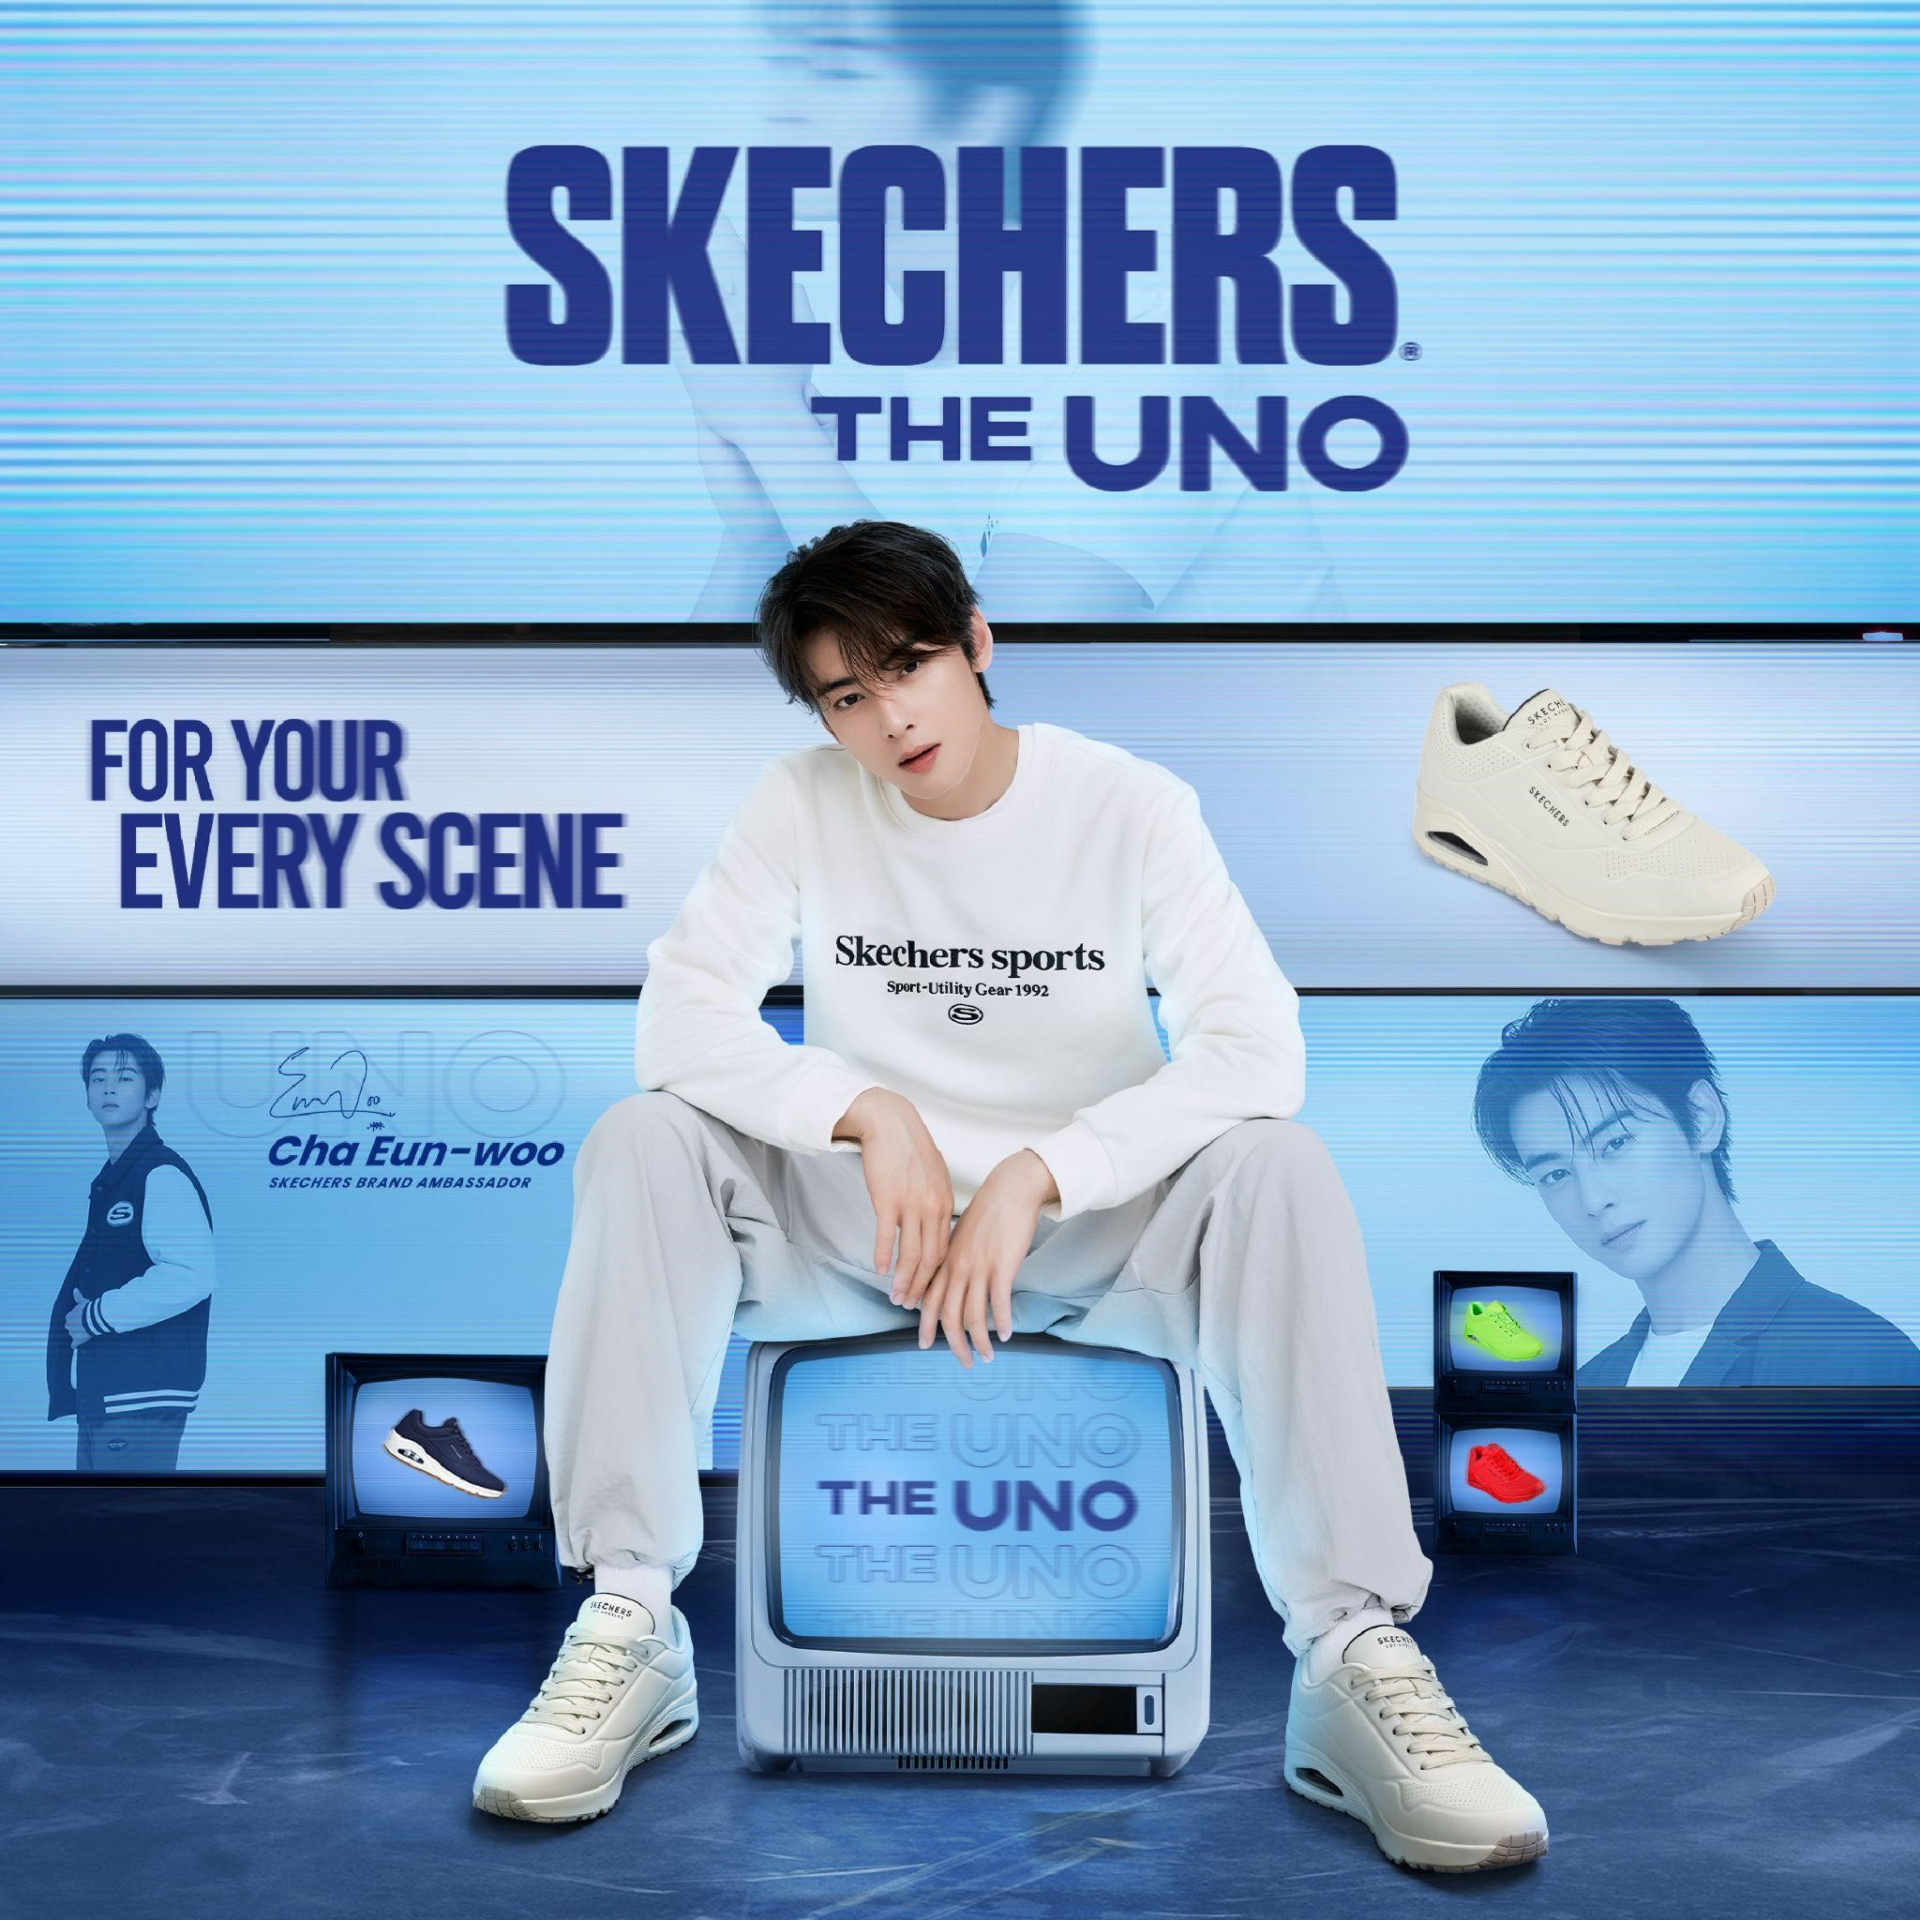 Skechers “trình làng” bộ sưu tập giày UNO mới với 7 sắc màu cực trẻ trung - ảnh 1